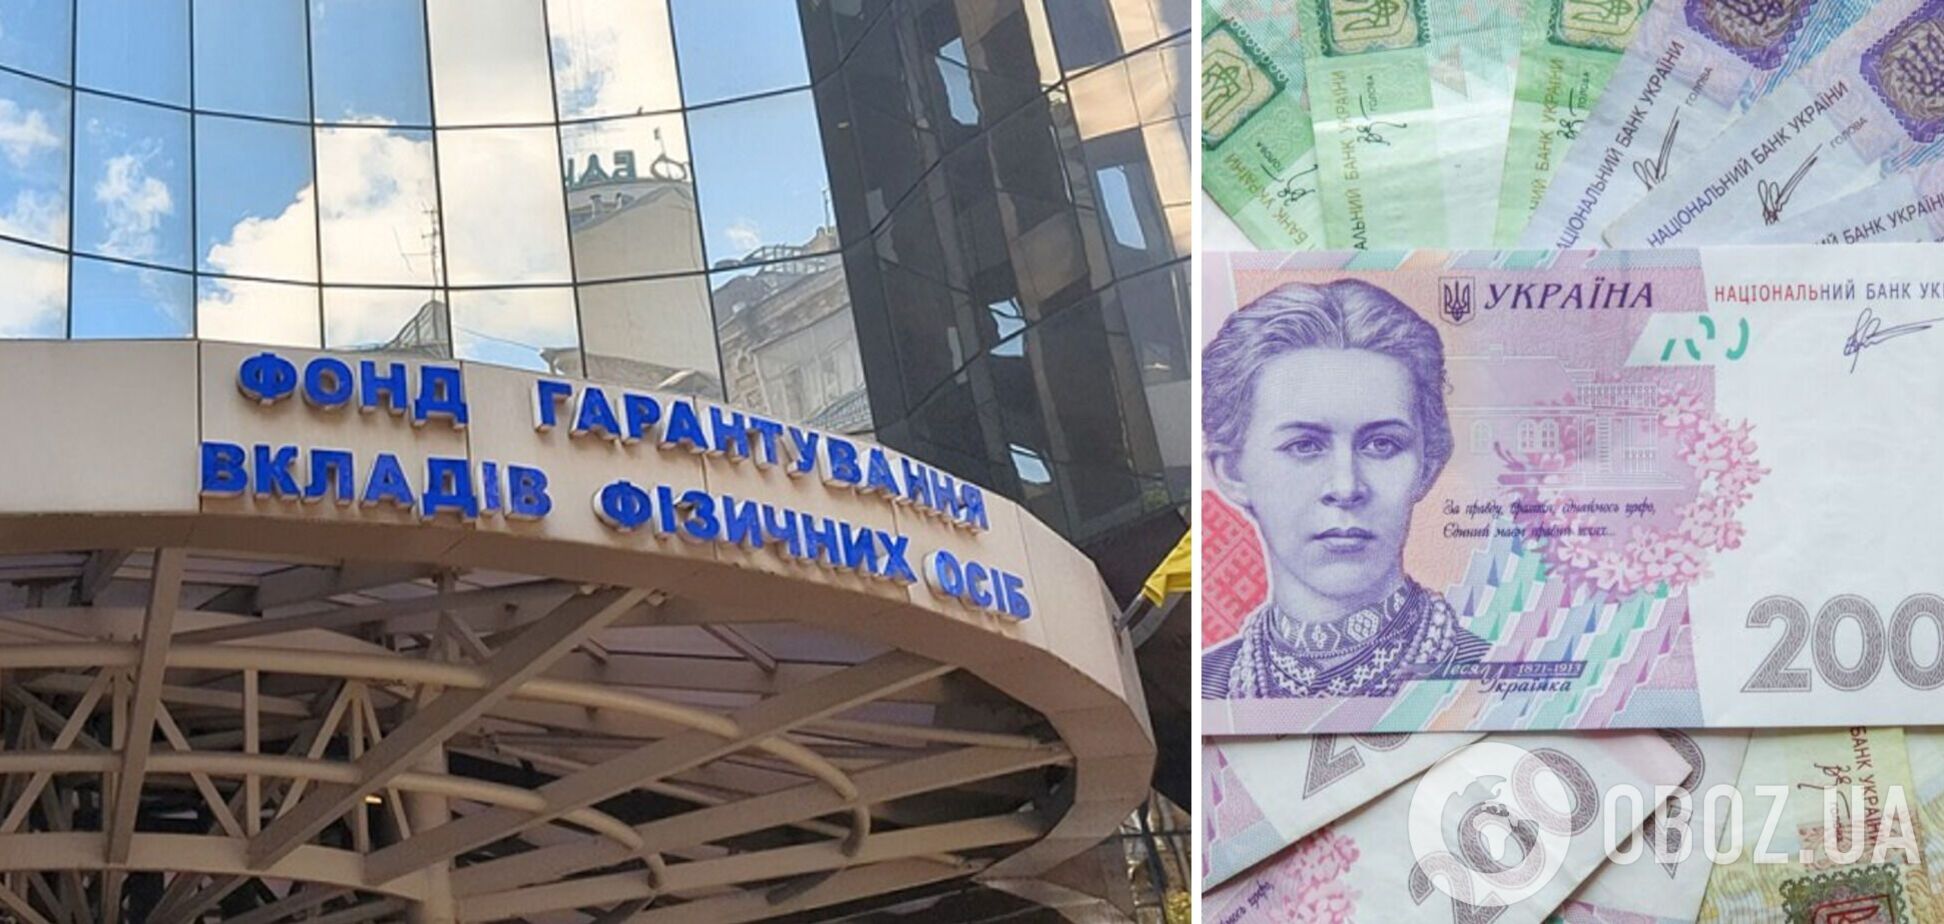 Вкладчикам некоторых украинских банков приостановили выплаты